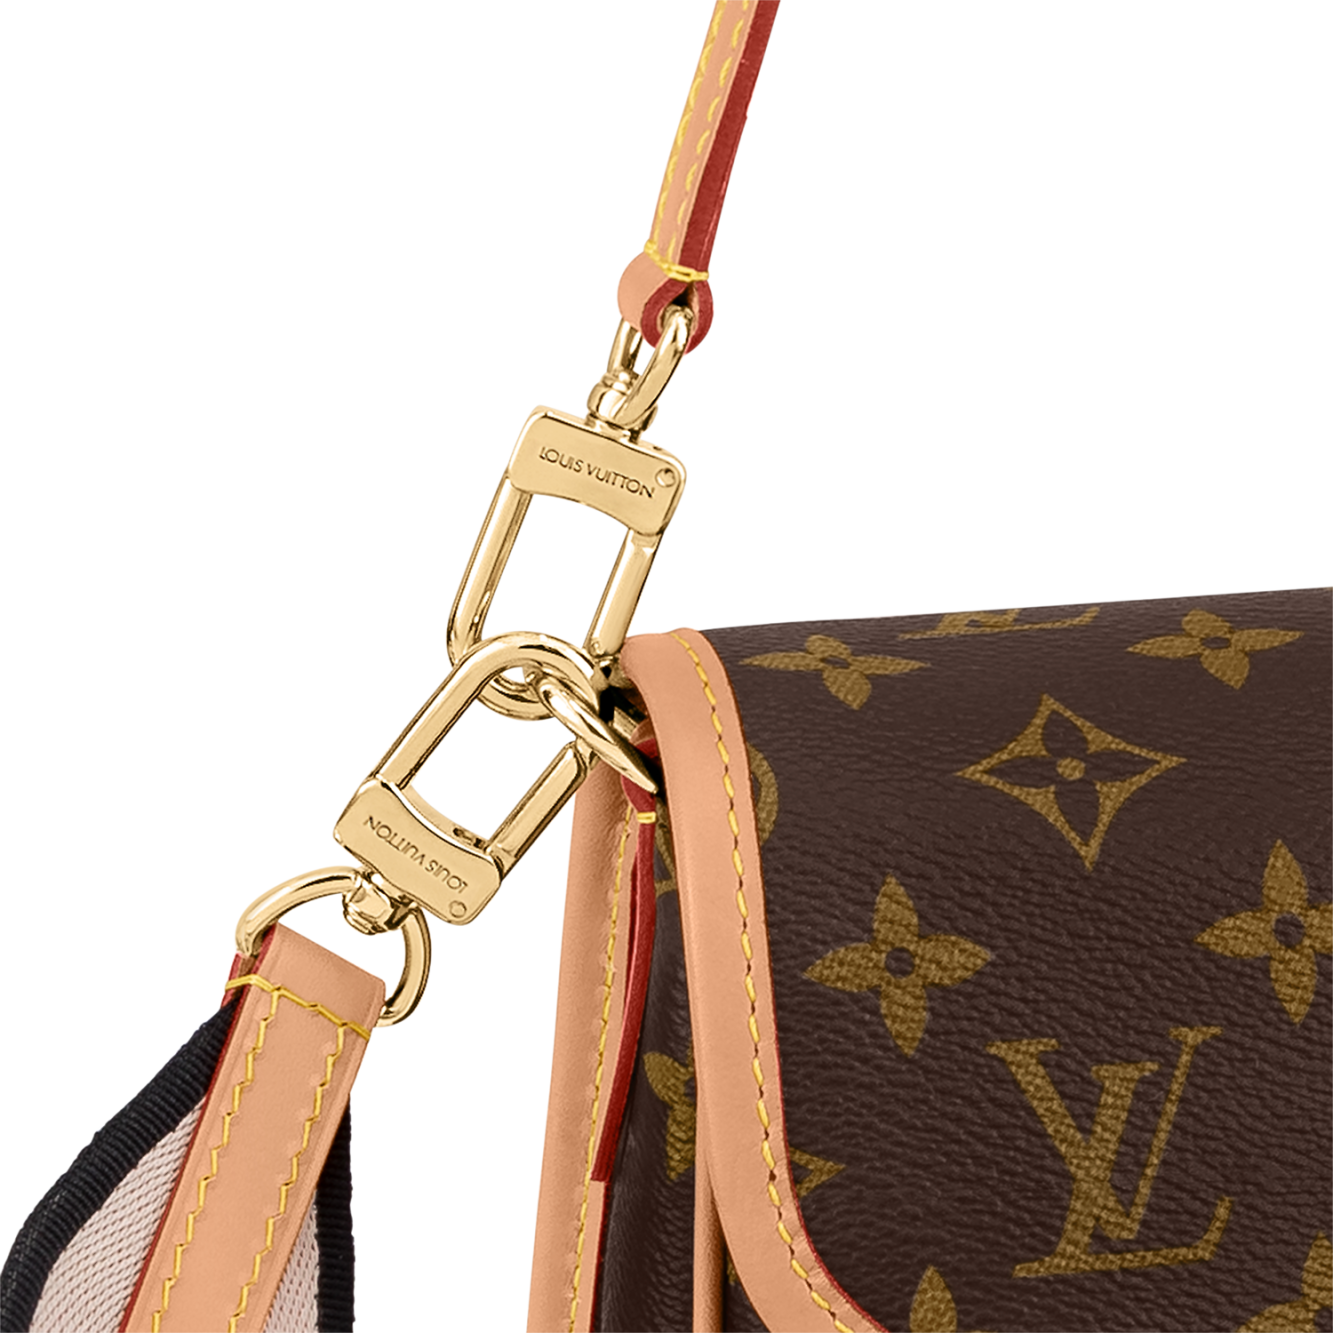 Louis Vuitton Diane Satchel - Vitkac shop online